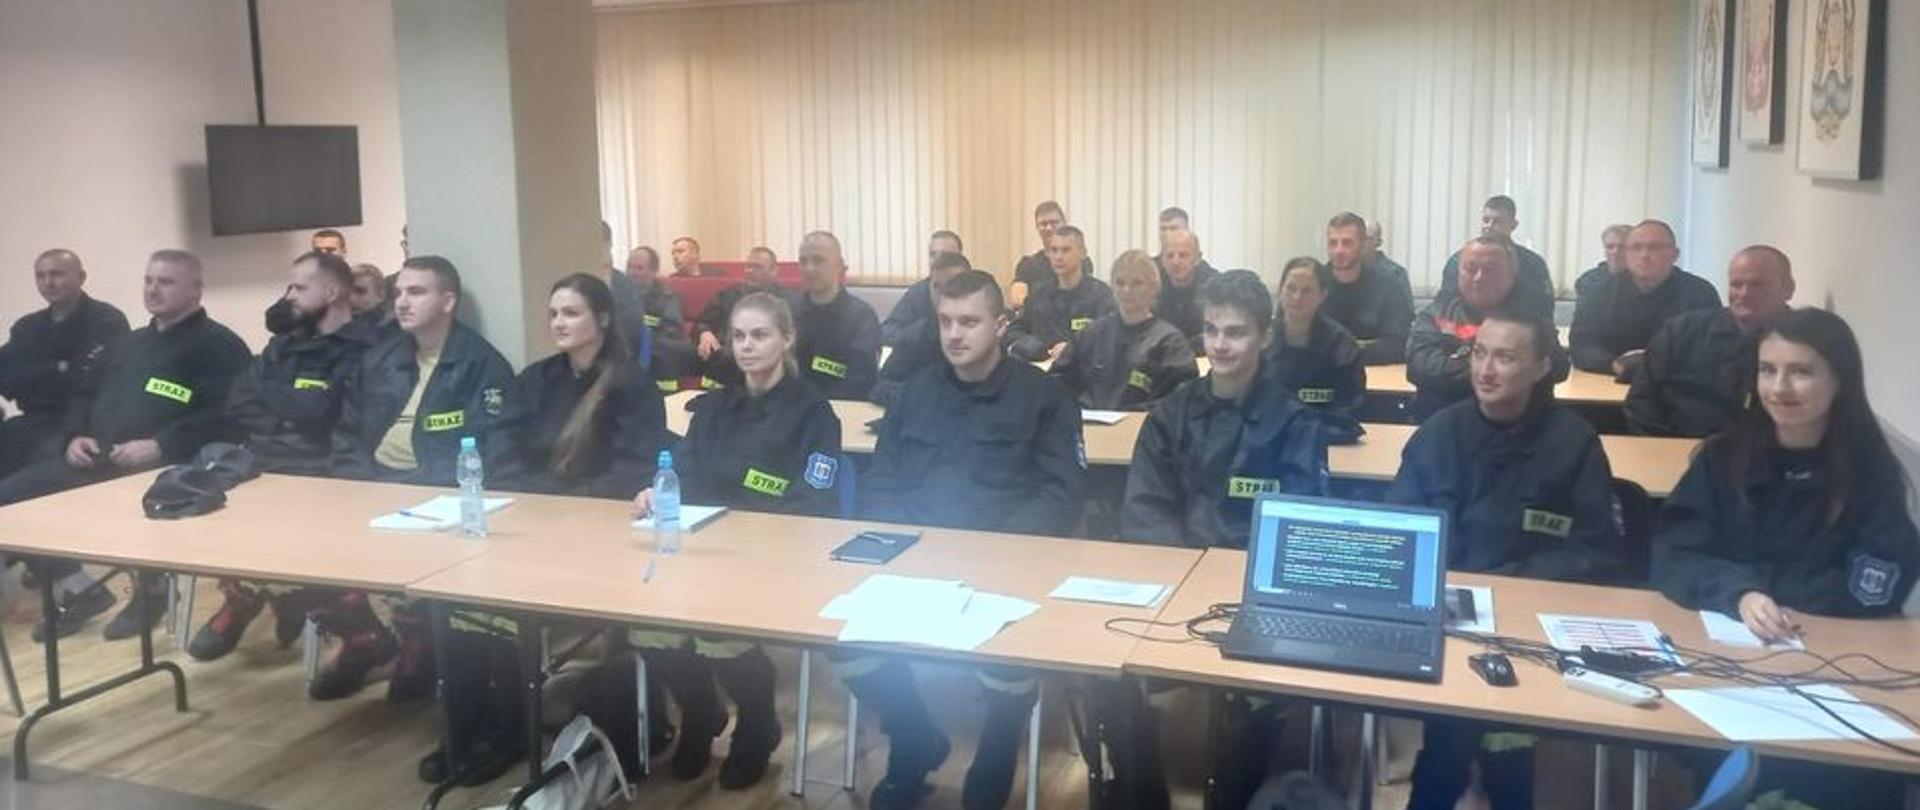 Rozpoczęcie szkolenia podstawowego dla strażaków ratowników Ochotniczych Straży Pożarnych 